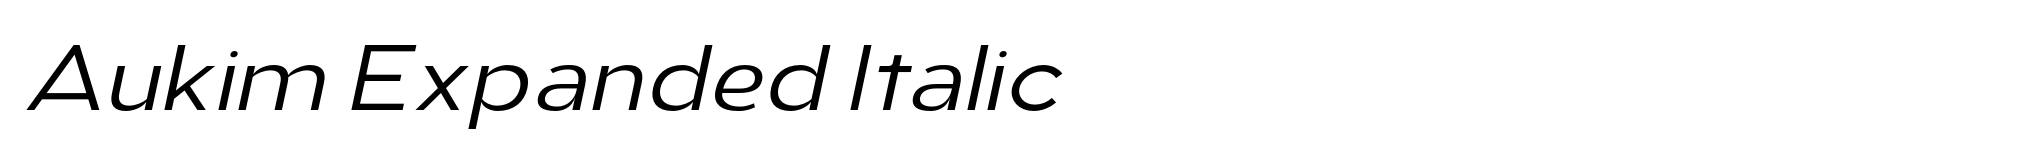 Aukim Expanded Italic image